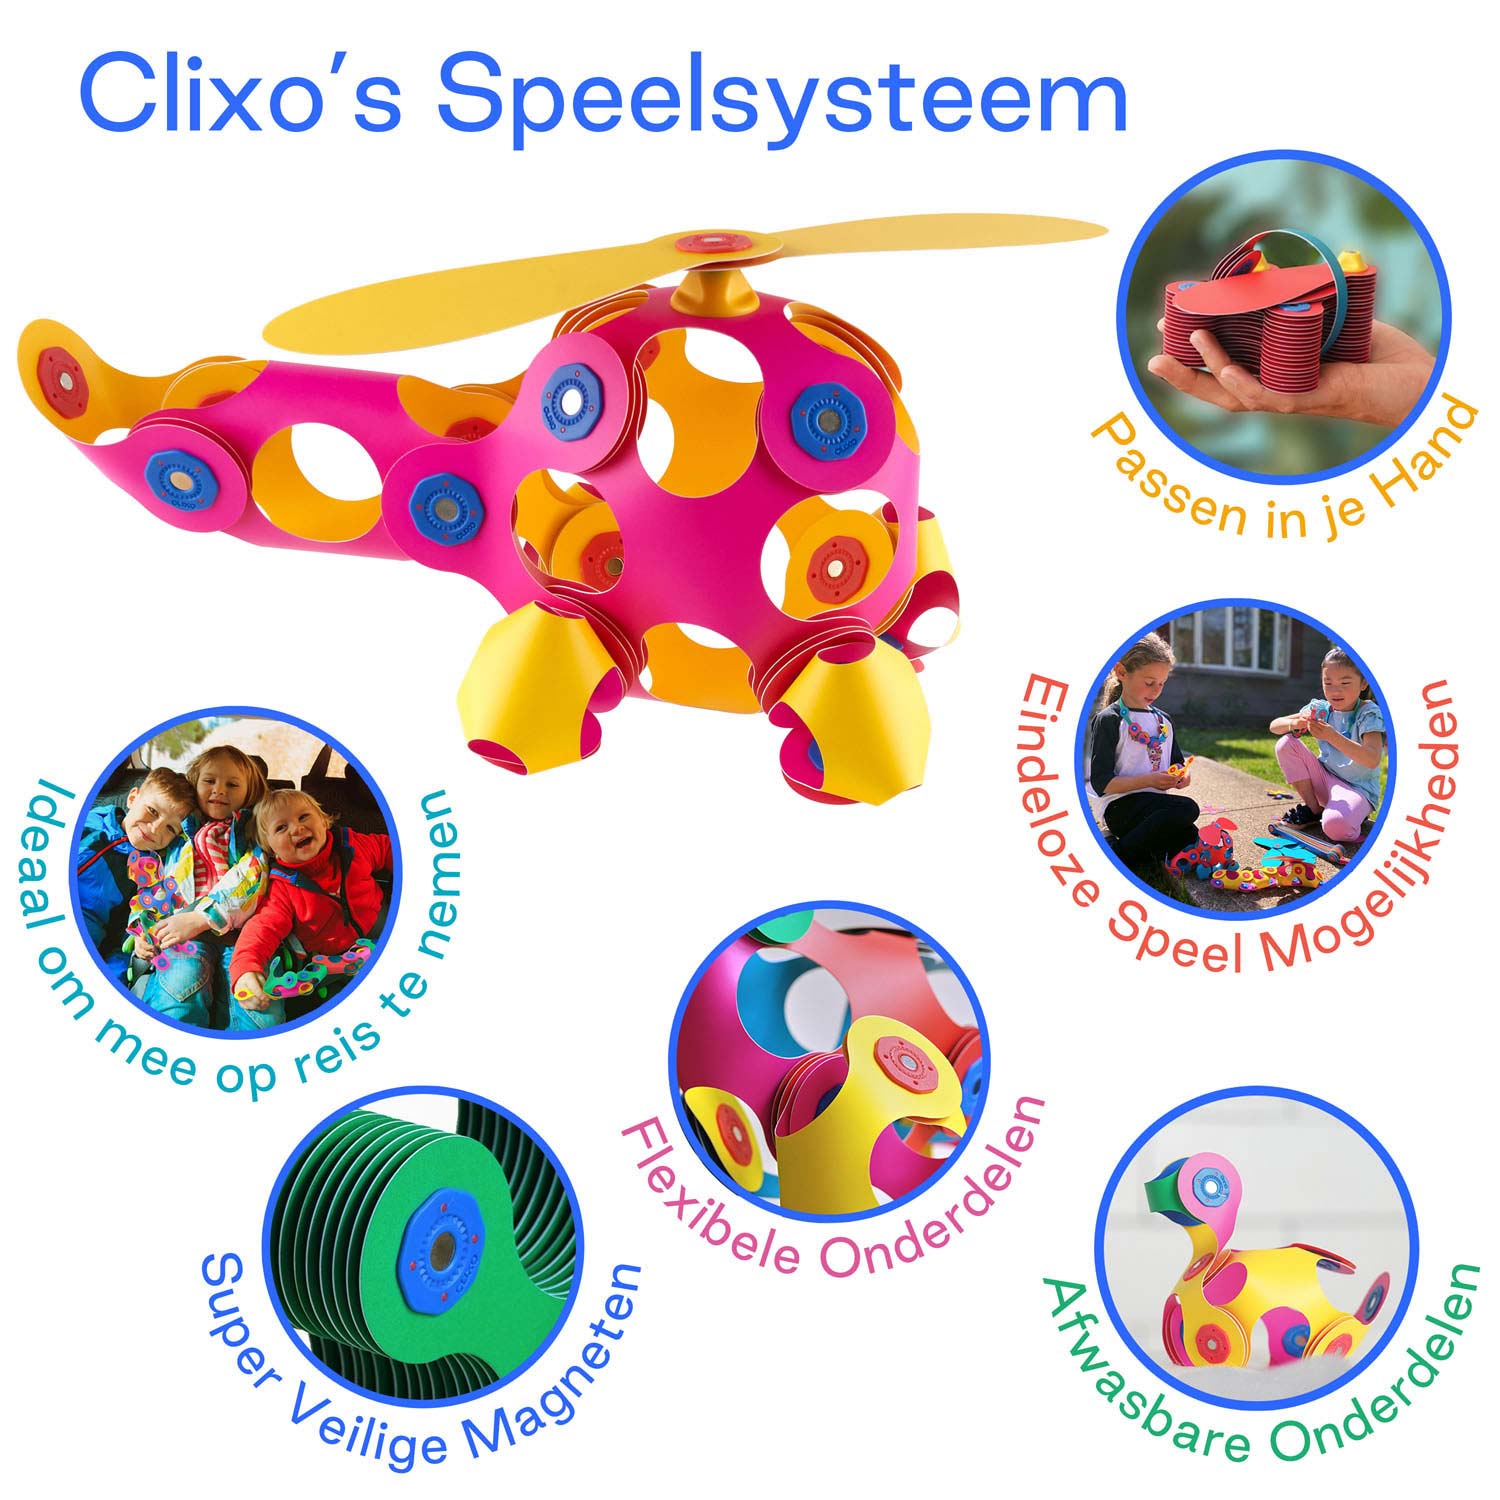 Clixo Magnetisches Konstruktionsspielzeug Crew Pack Pink/Gelb, 30 Stück.